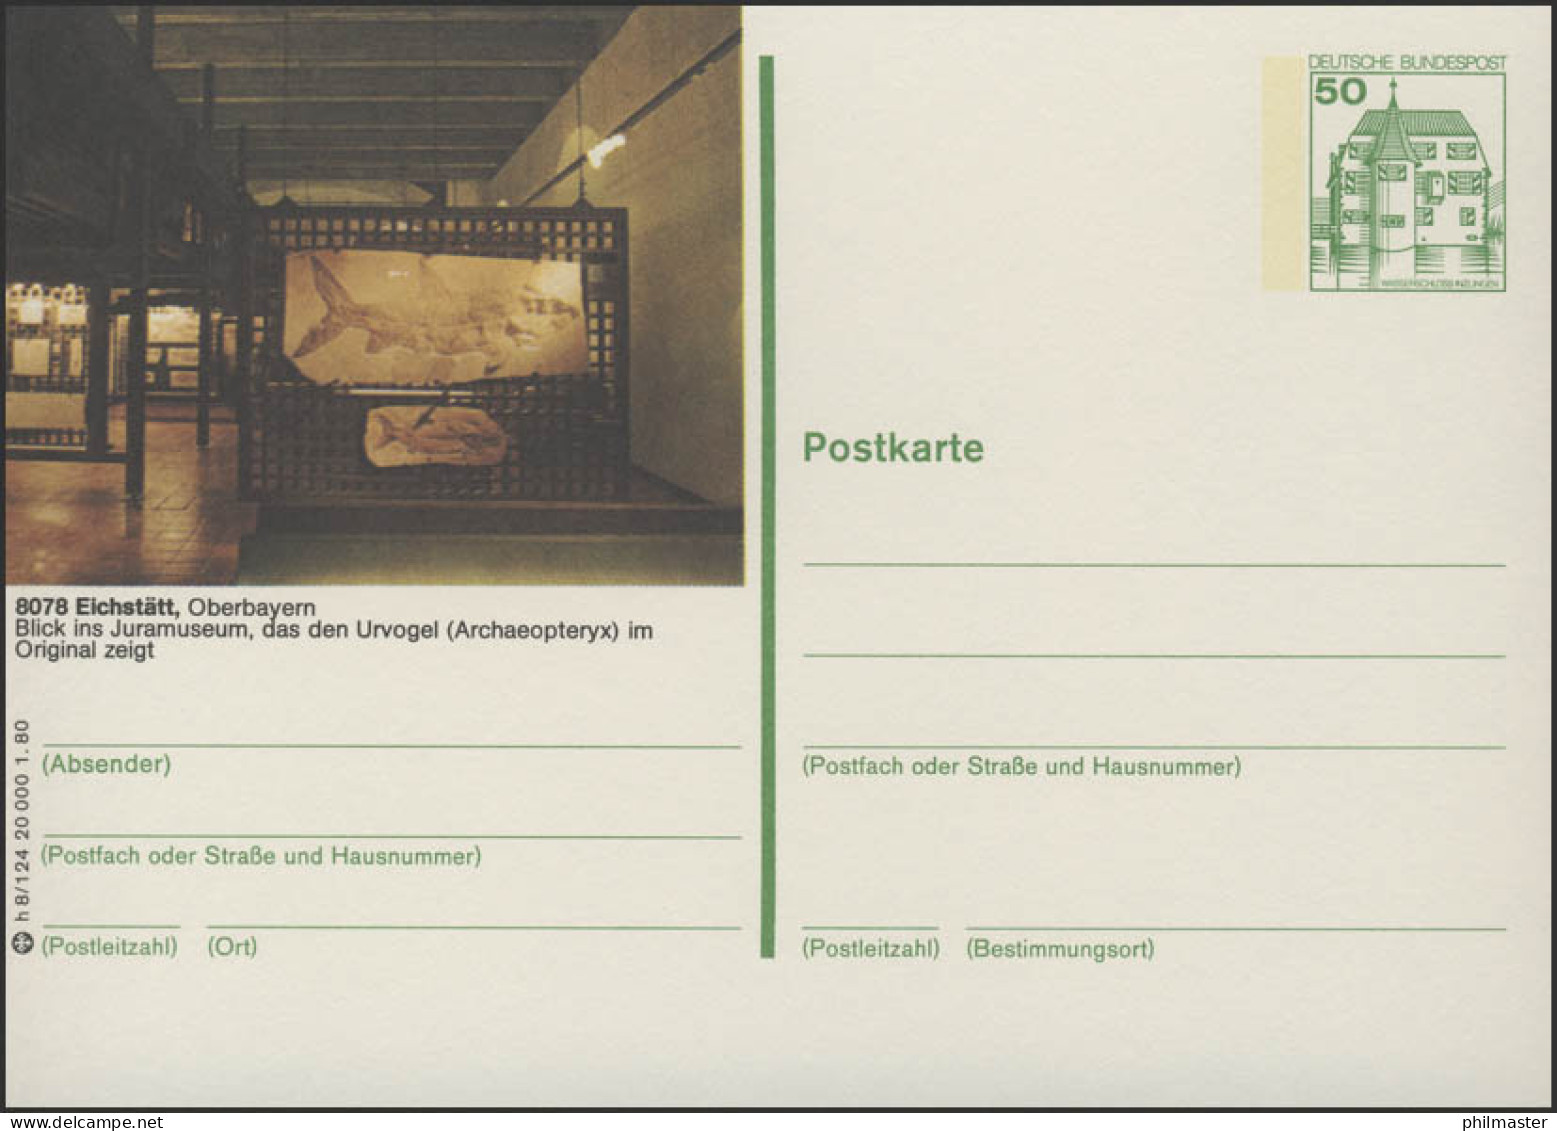 P130-h8/124 - 8078 Eichstädt, Jura-Museum ** - Bildpostkarten - Ungebraucht